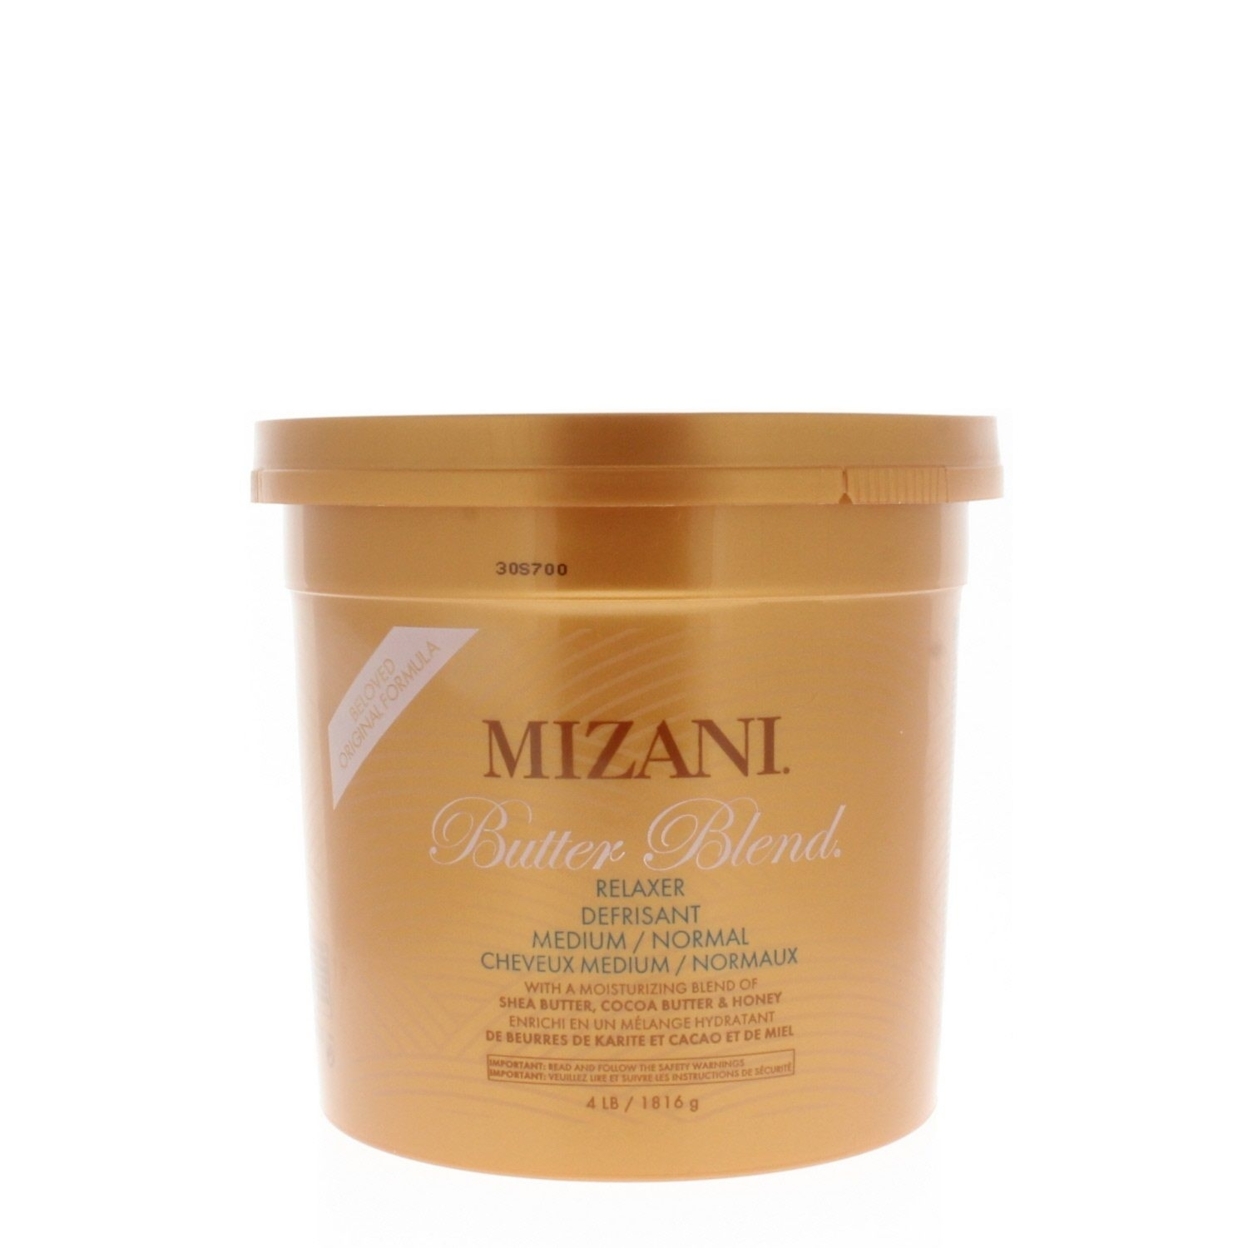 Mizani Butter Blend Relaxer Medium/Normal Hair Relaxer 4lbs/1816g